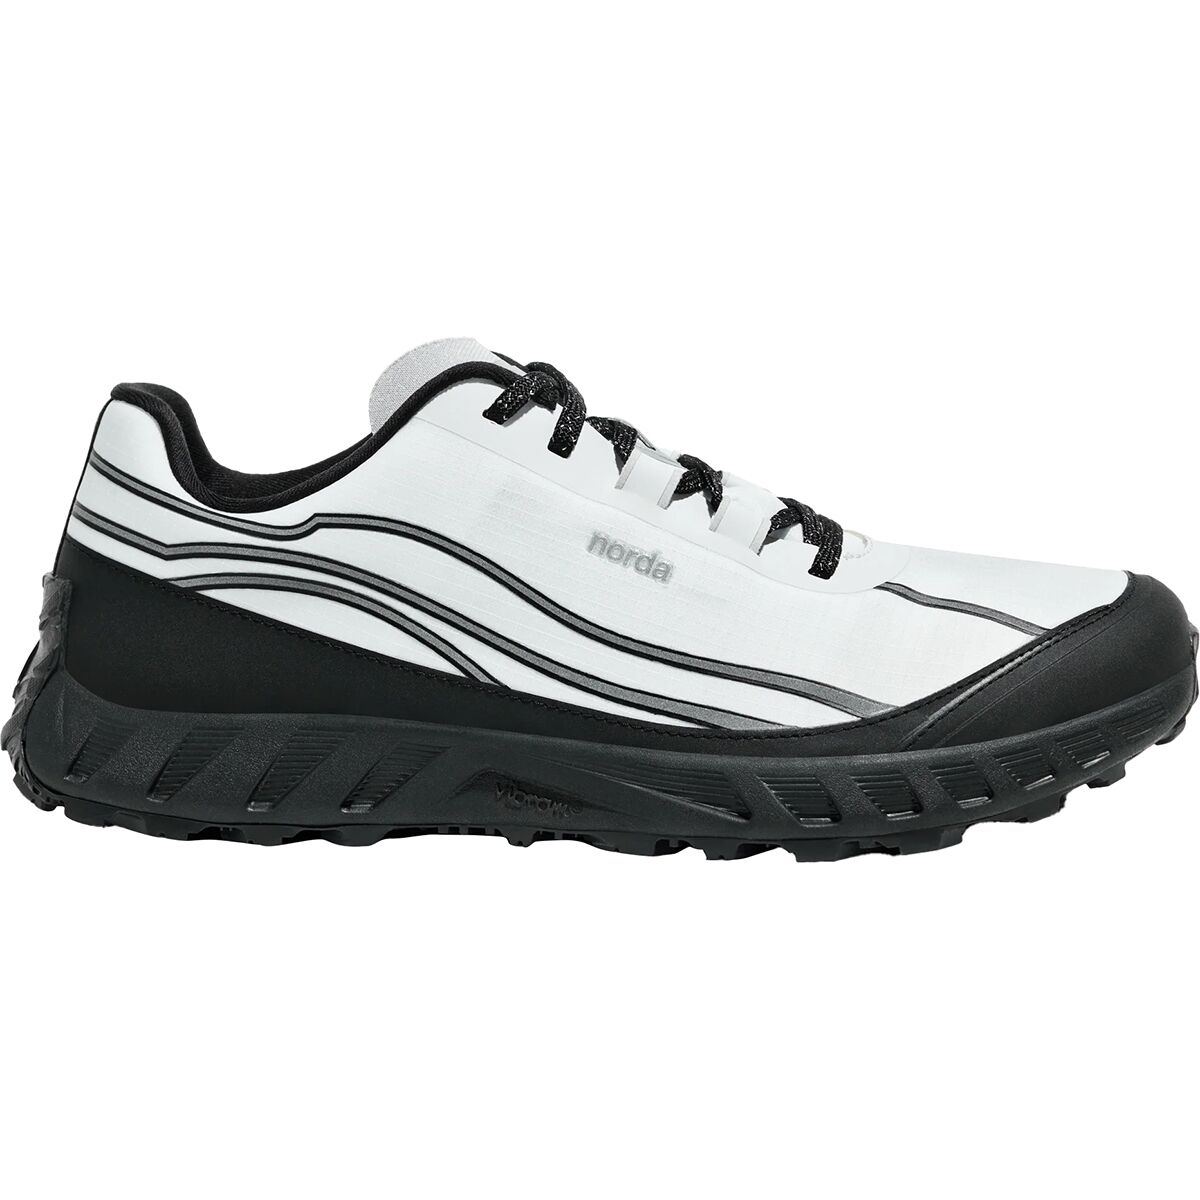 002 Trail Running Shoe - Women